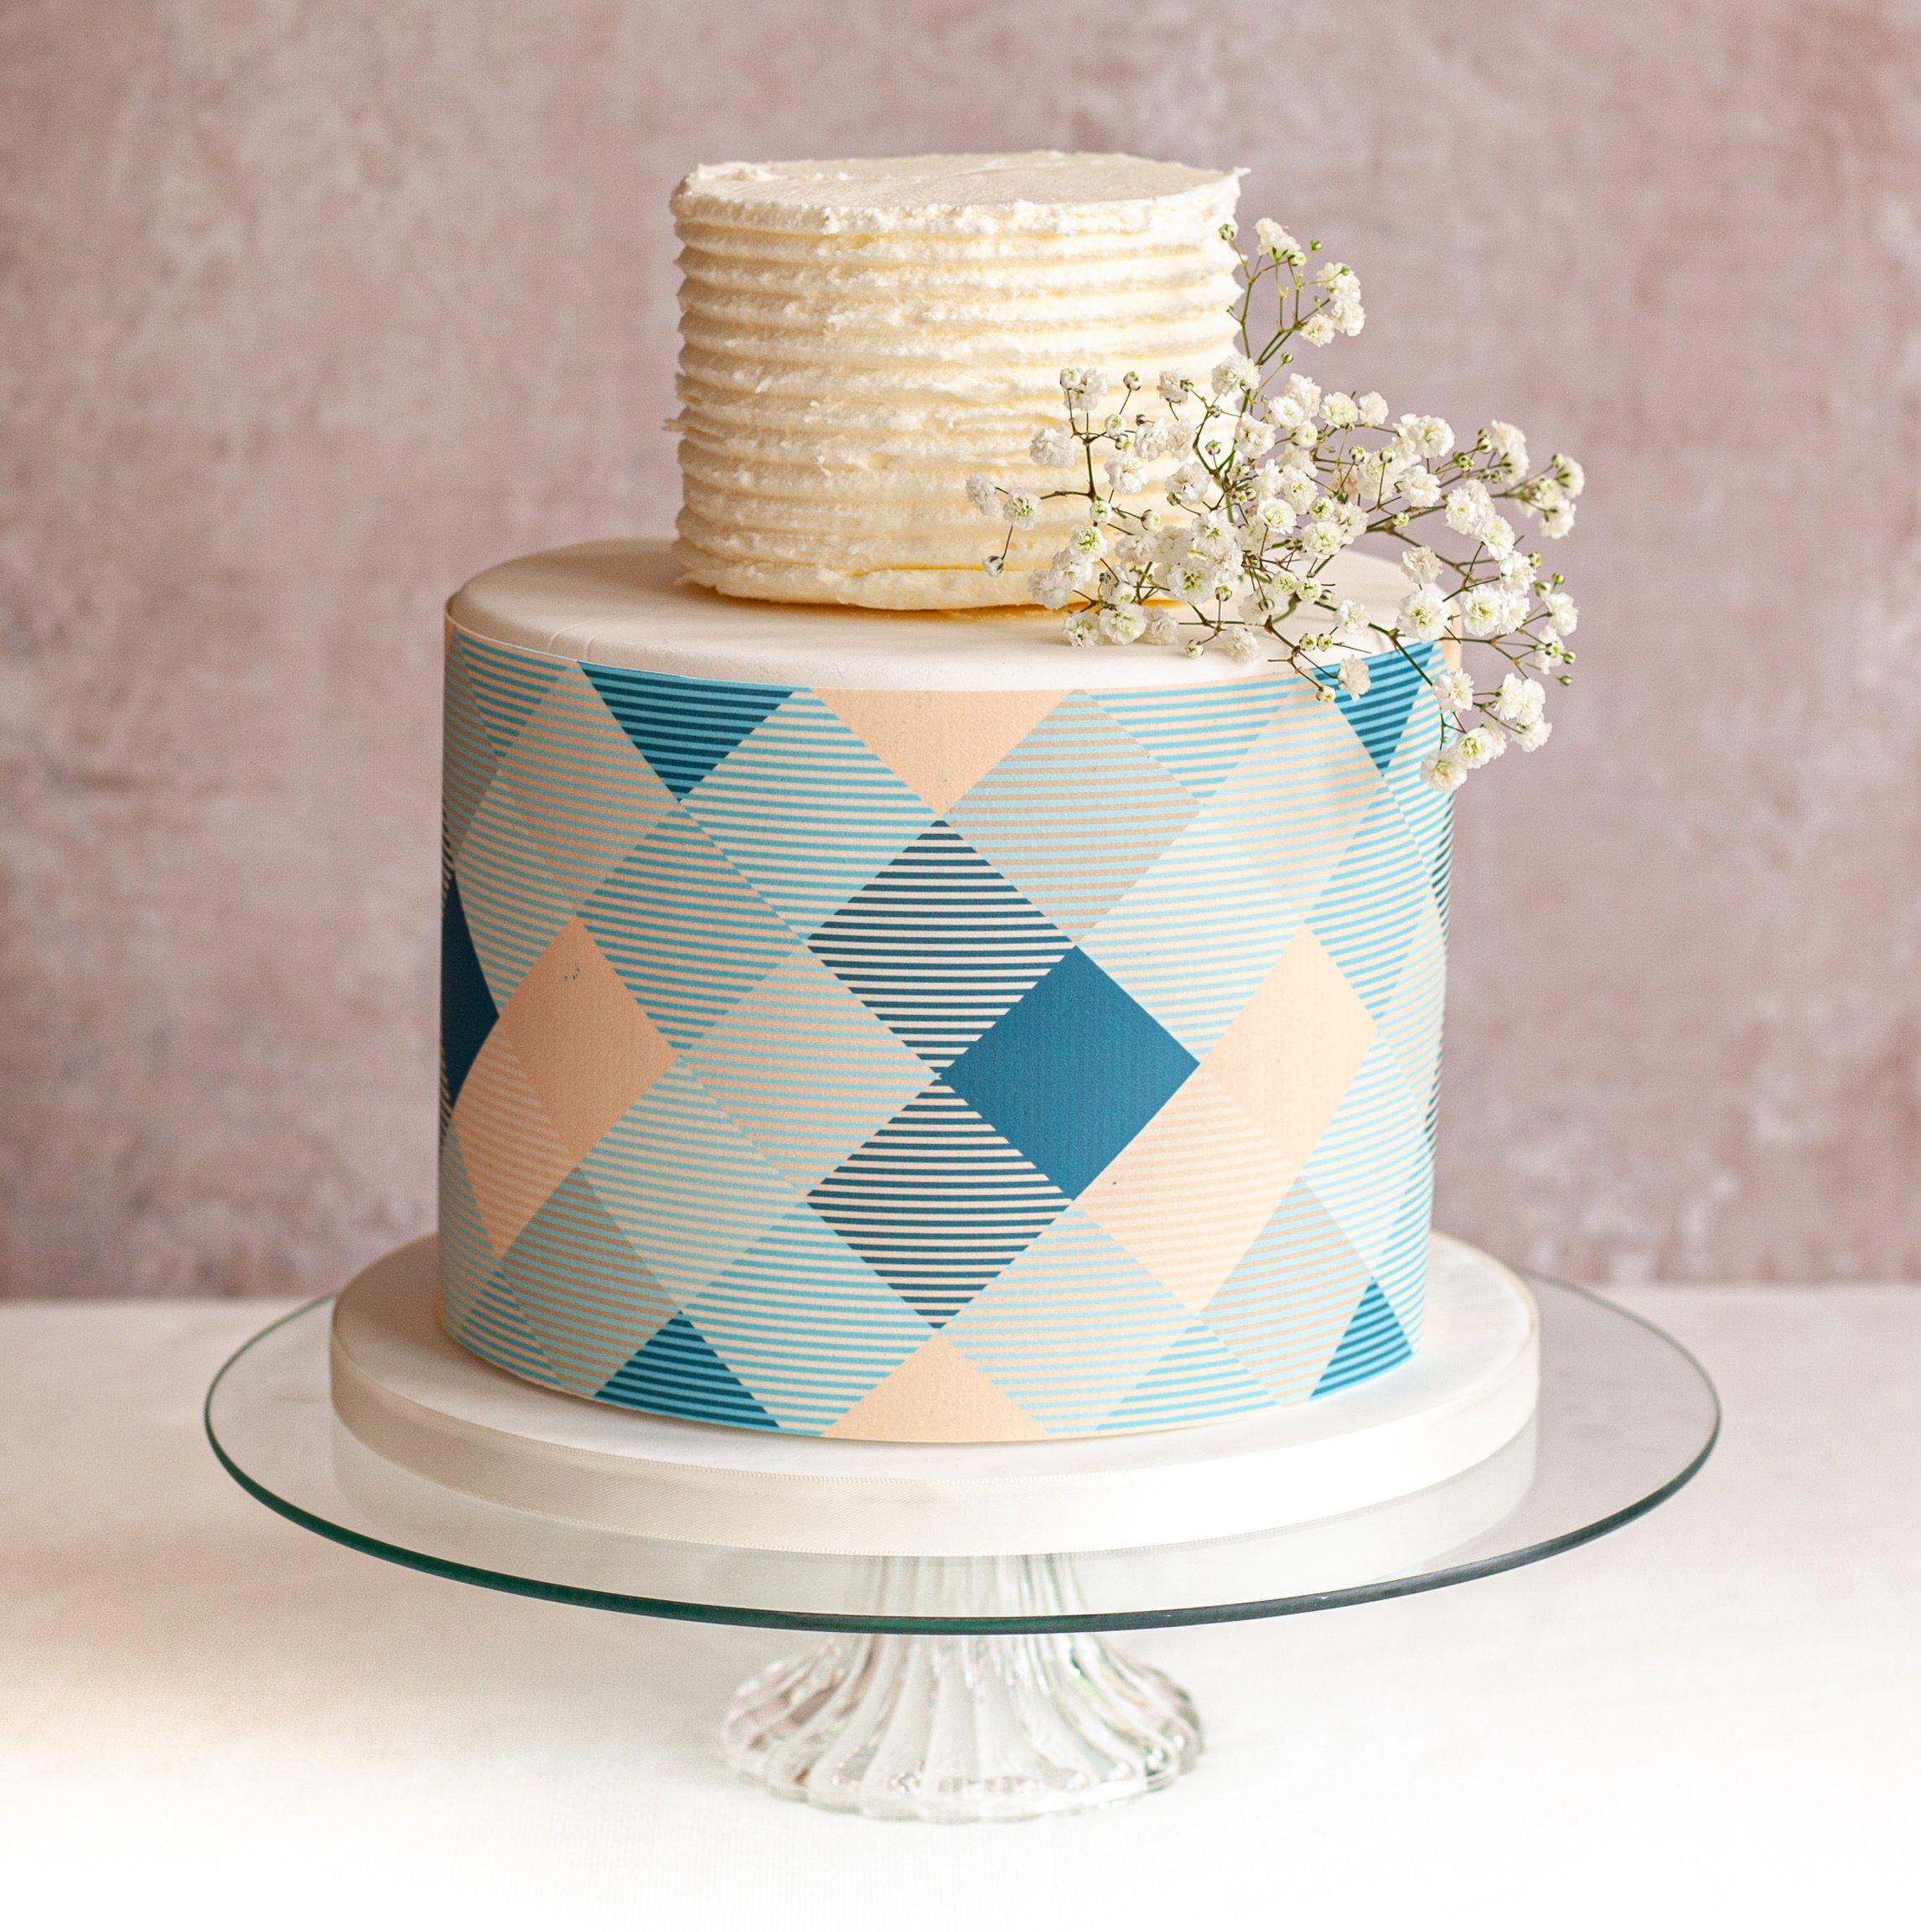 Large celebration cake with blue check cake wrap